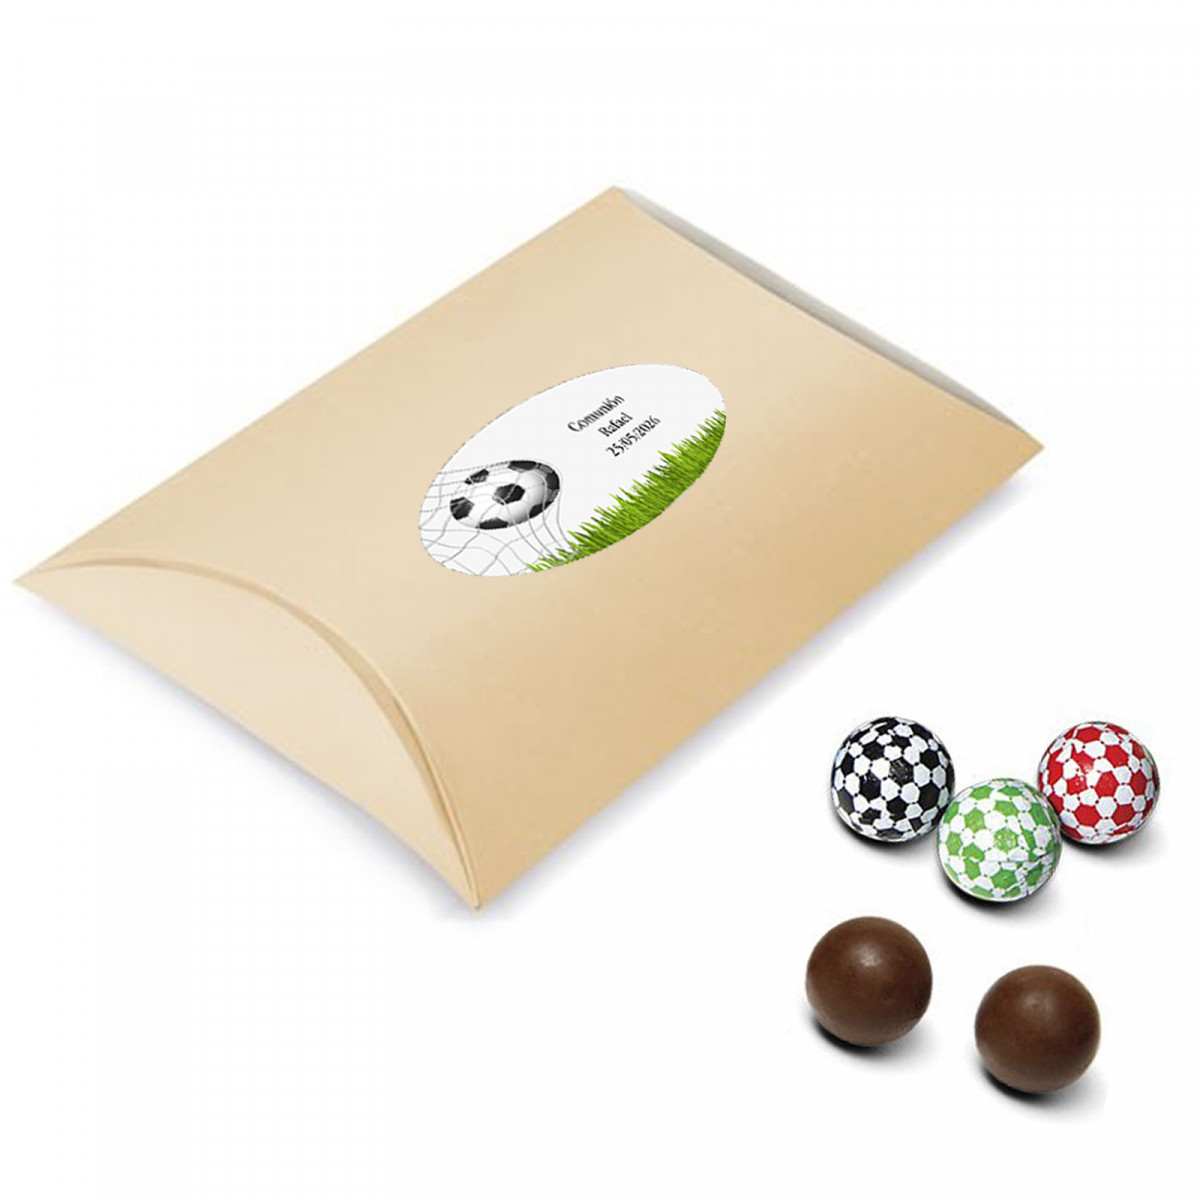 Balones de chocolate rellenos presentados en caja de cartón personalizada